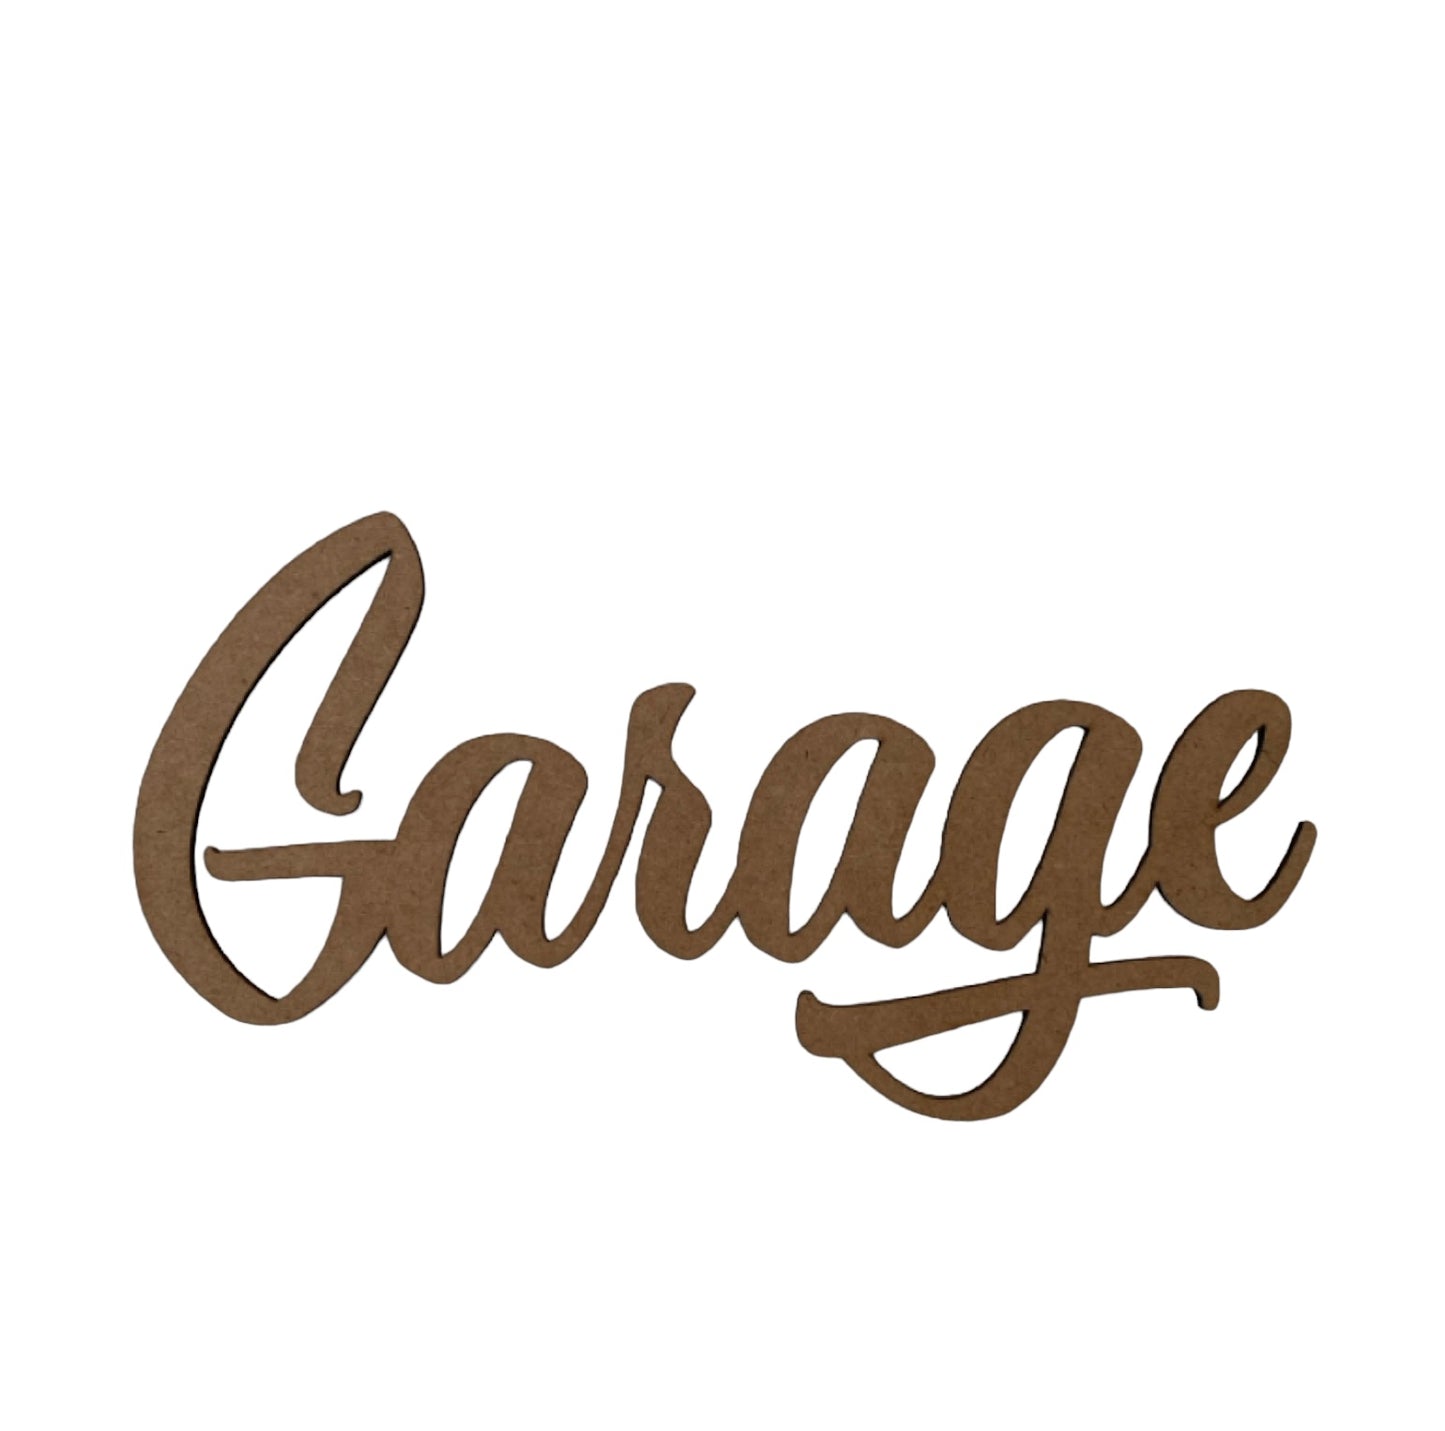 Garage Door Word Sign MDF DIY Wooden